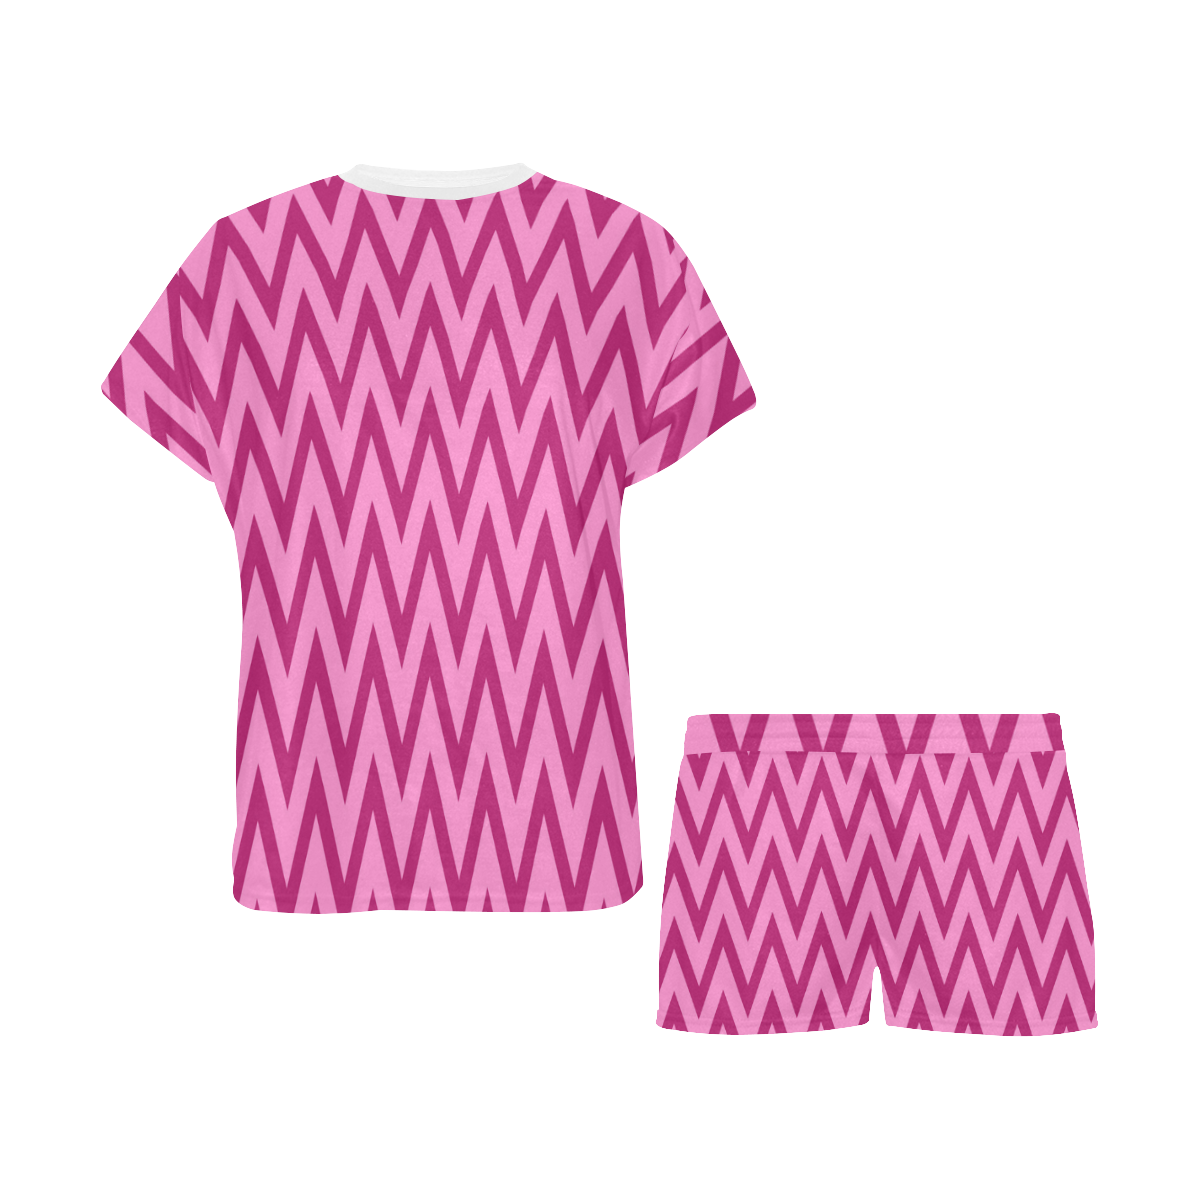 Chevron Pinks Women's Short Pajama Set